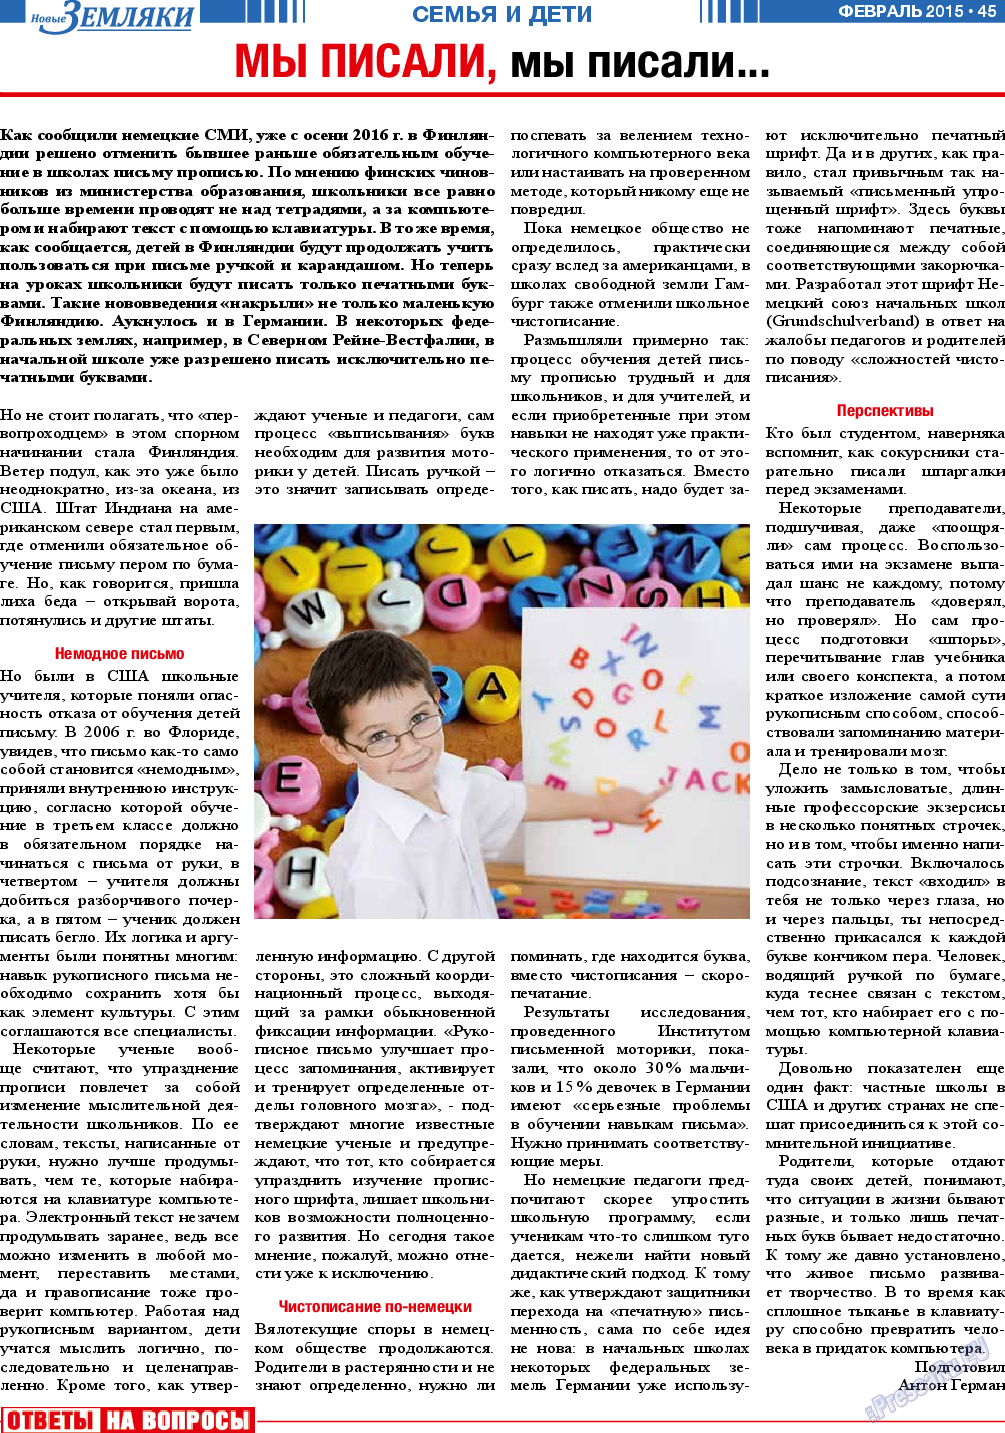 Новые Земляки, газета. 2015 №2 стр.45